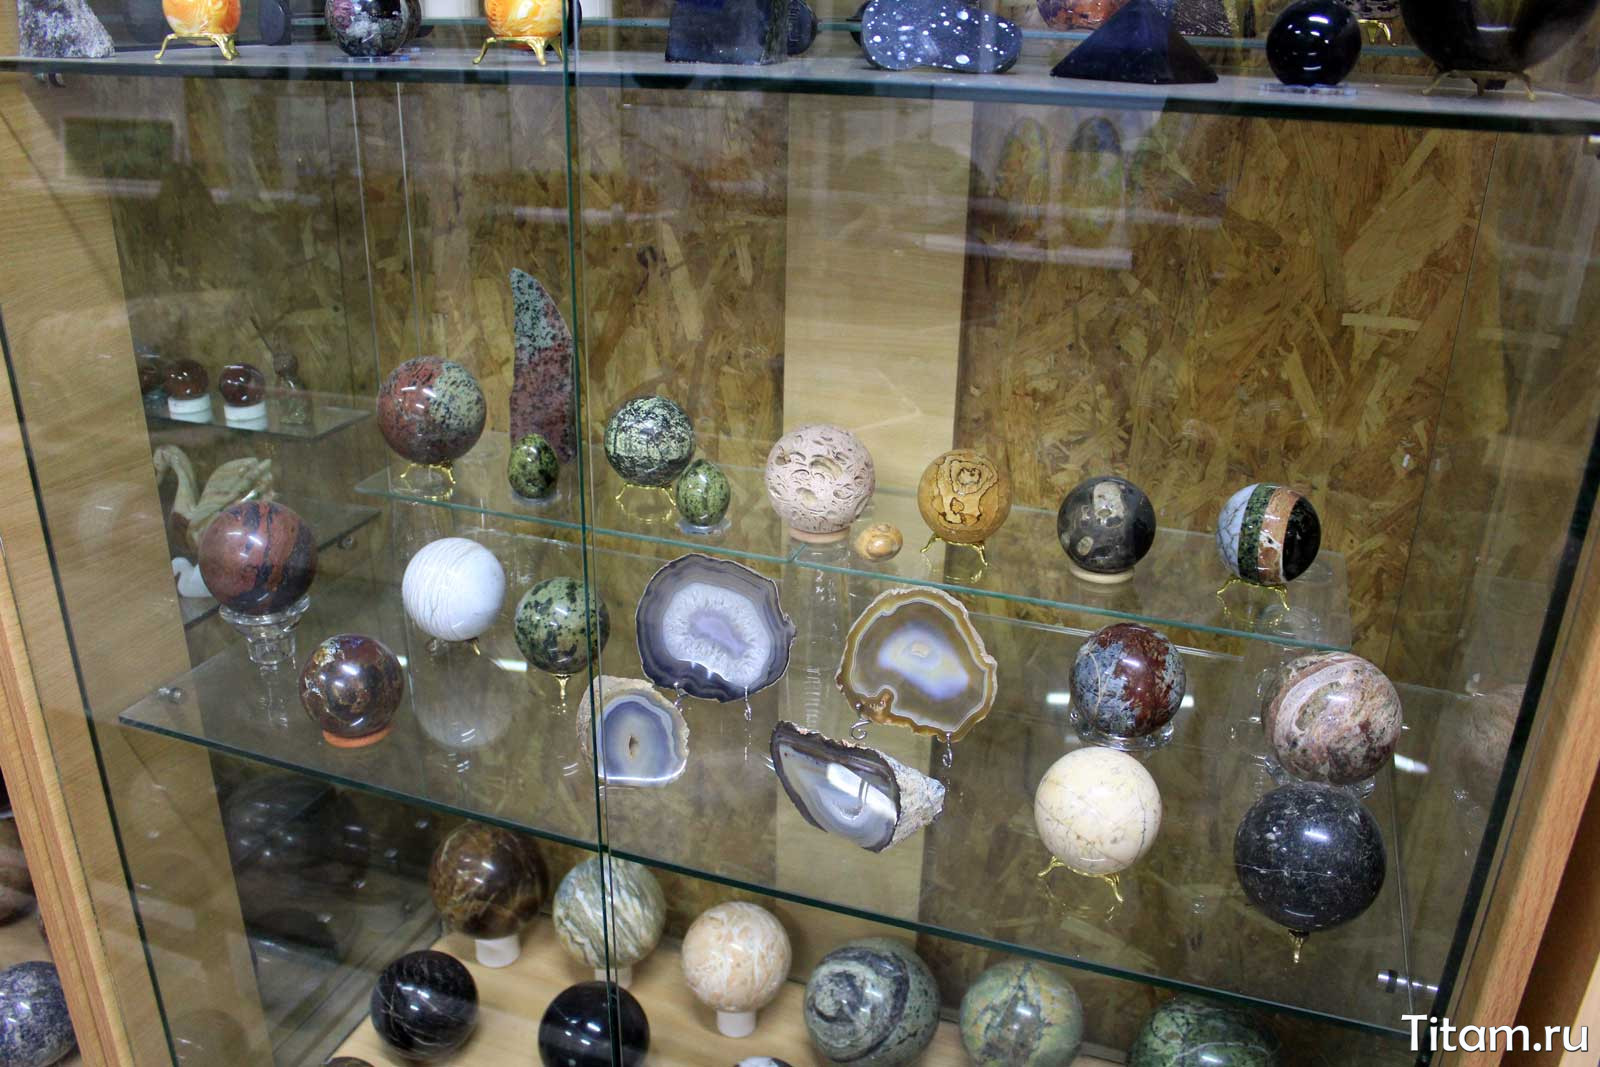 Минералы в музее "Сад камней"